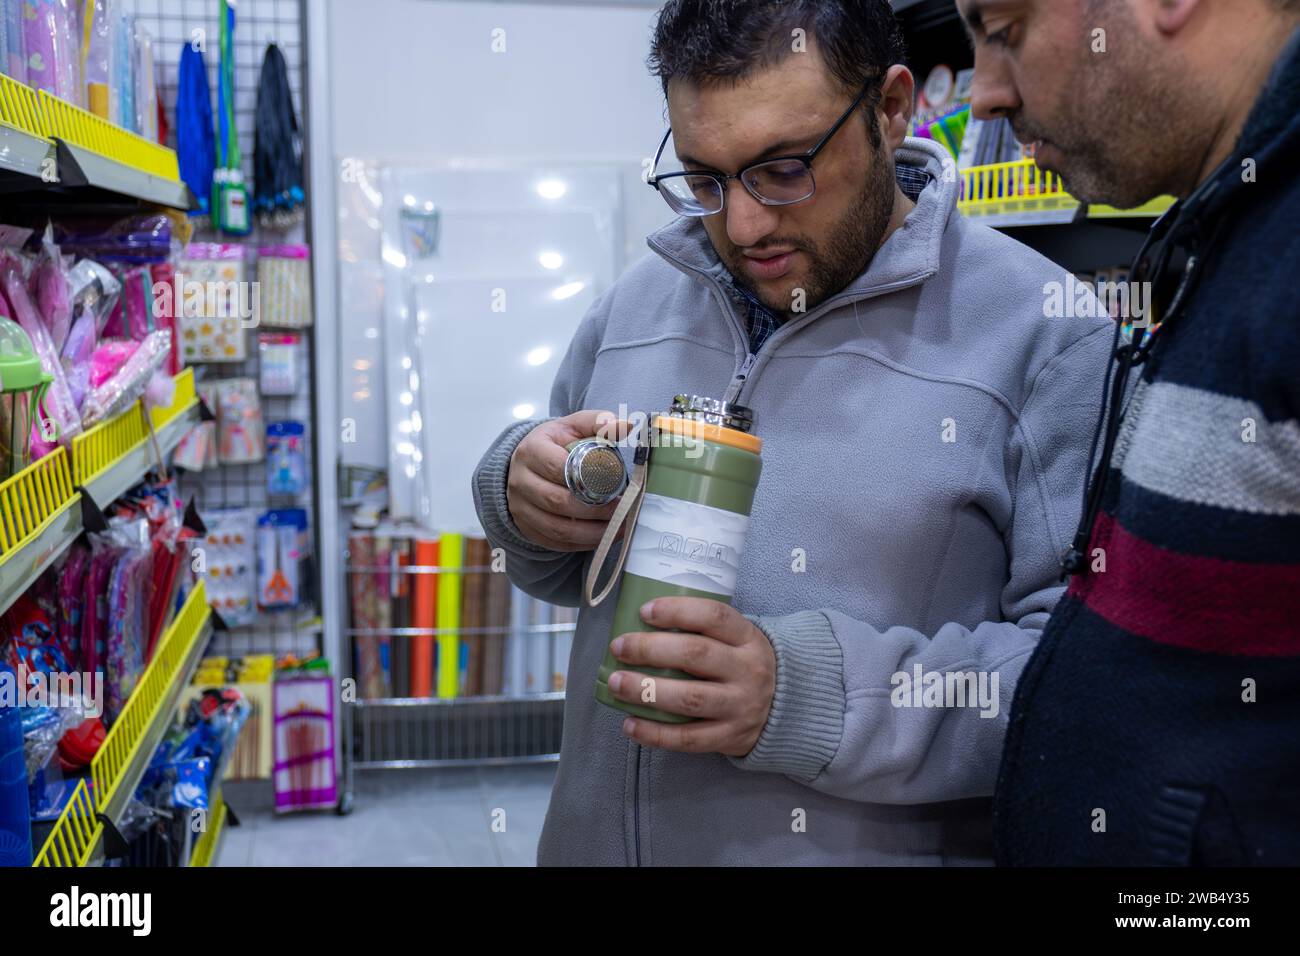 l'uomo controlla la tazza termica in negozio per l'acquisto, controllando le specifiche e la durata dell'isolamento con l'aiuto del proprietario del negozio Foto Stock